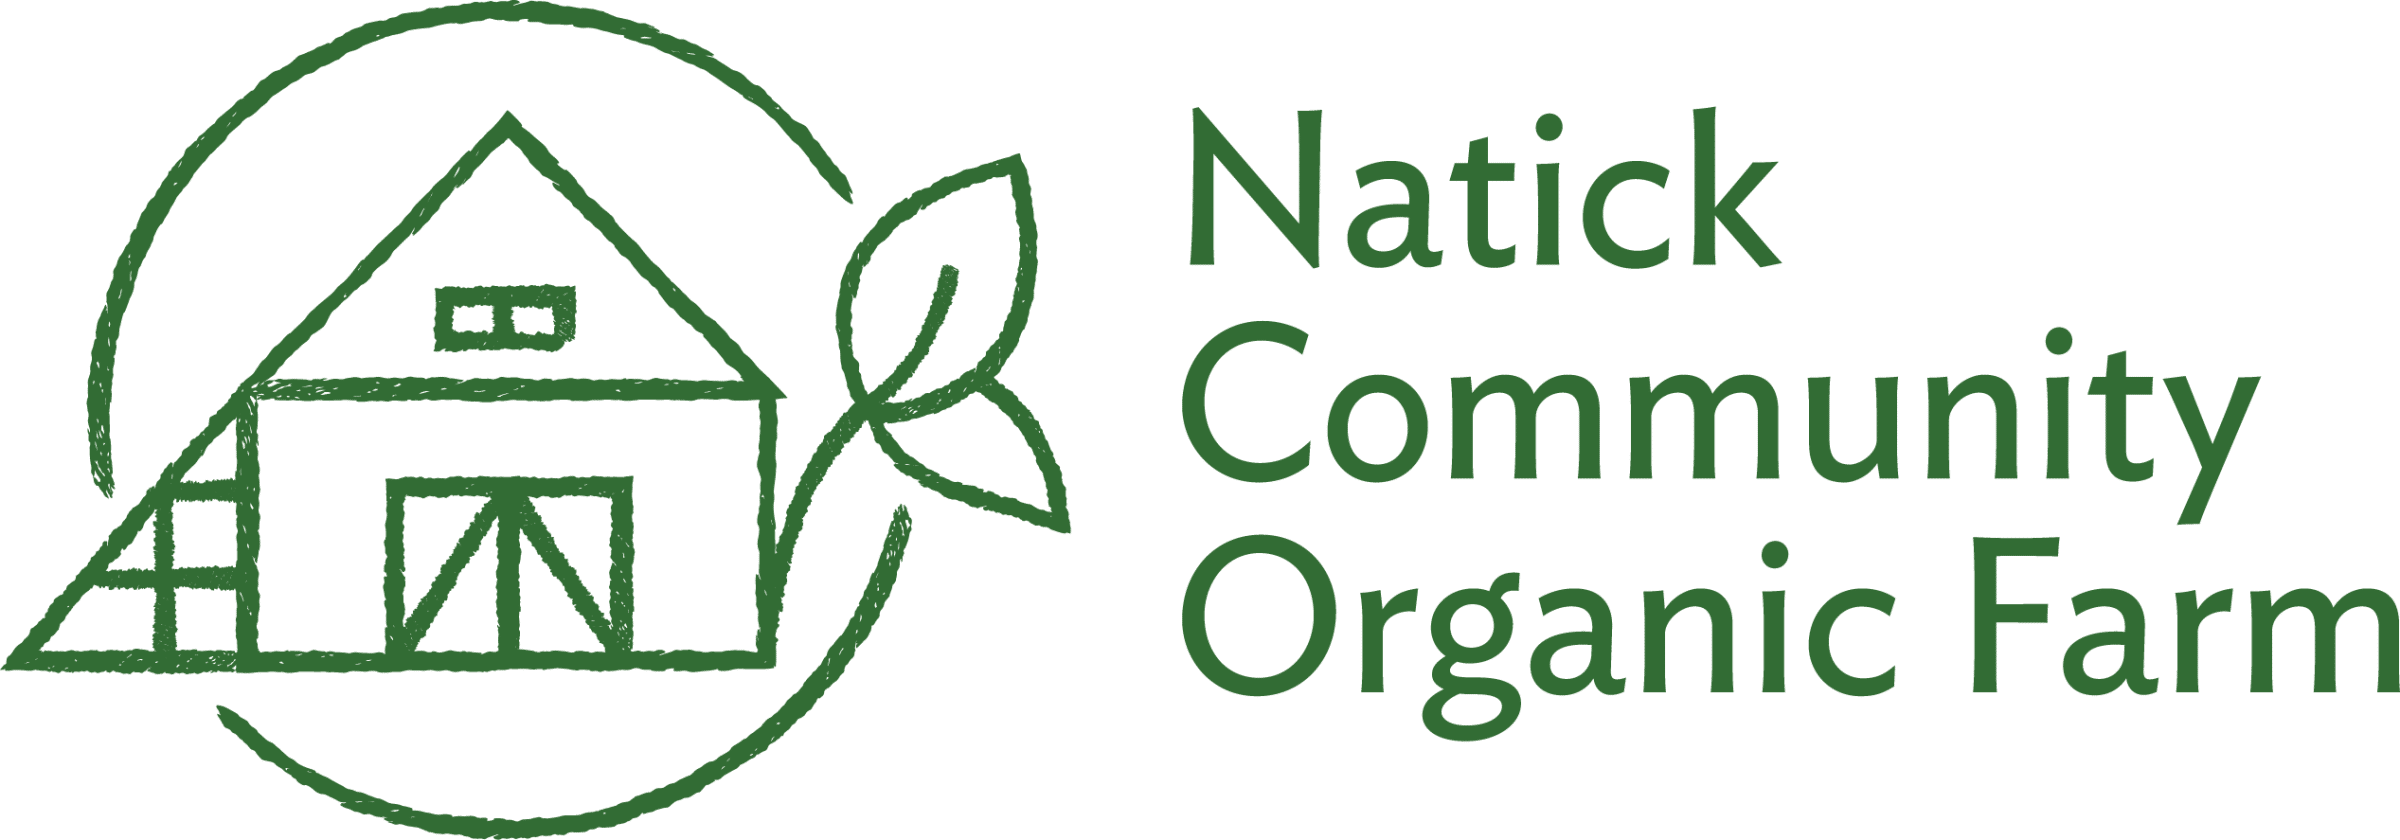 NCOF logo